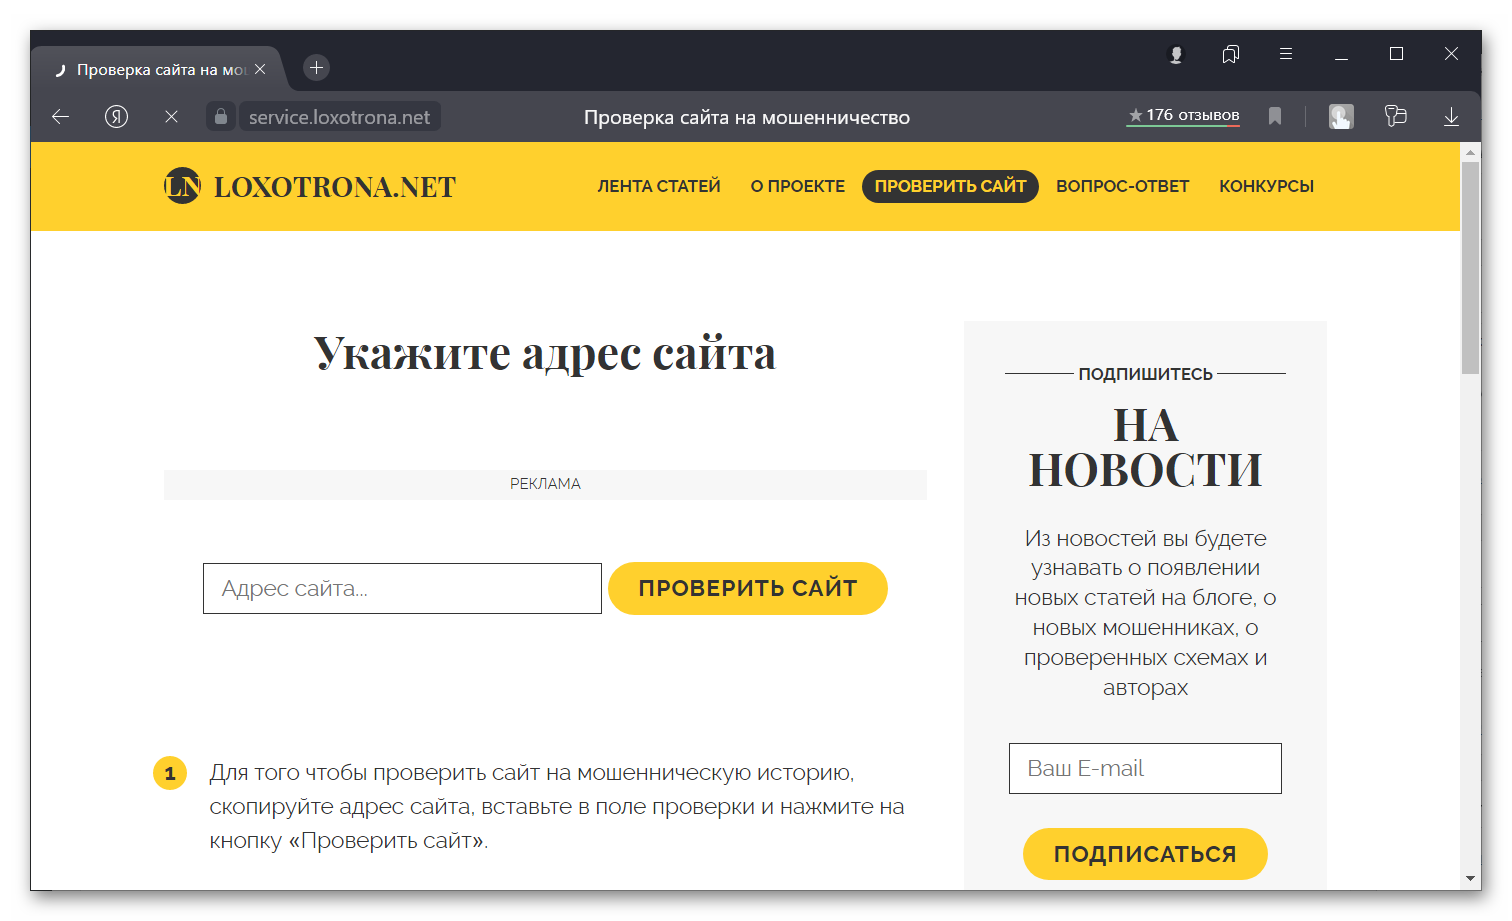 Проверка сайта на мошенничество - Яндекс-Браузер